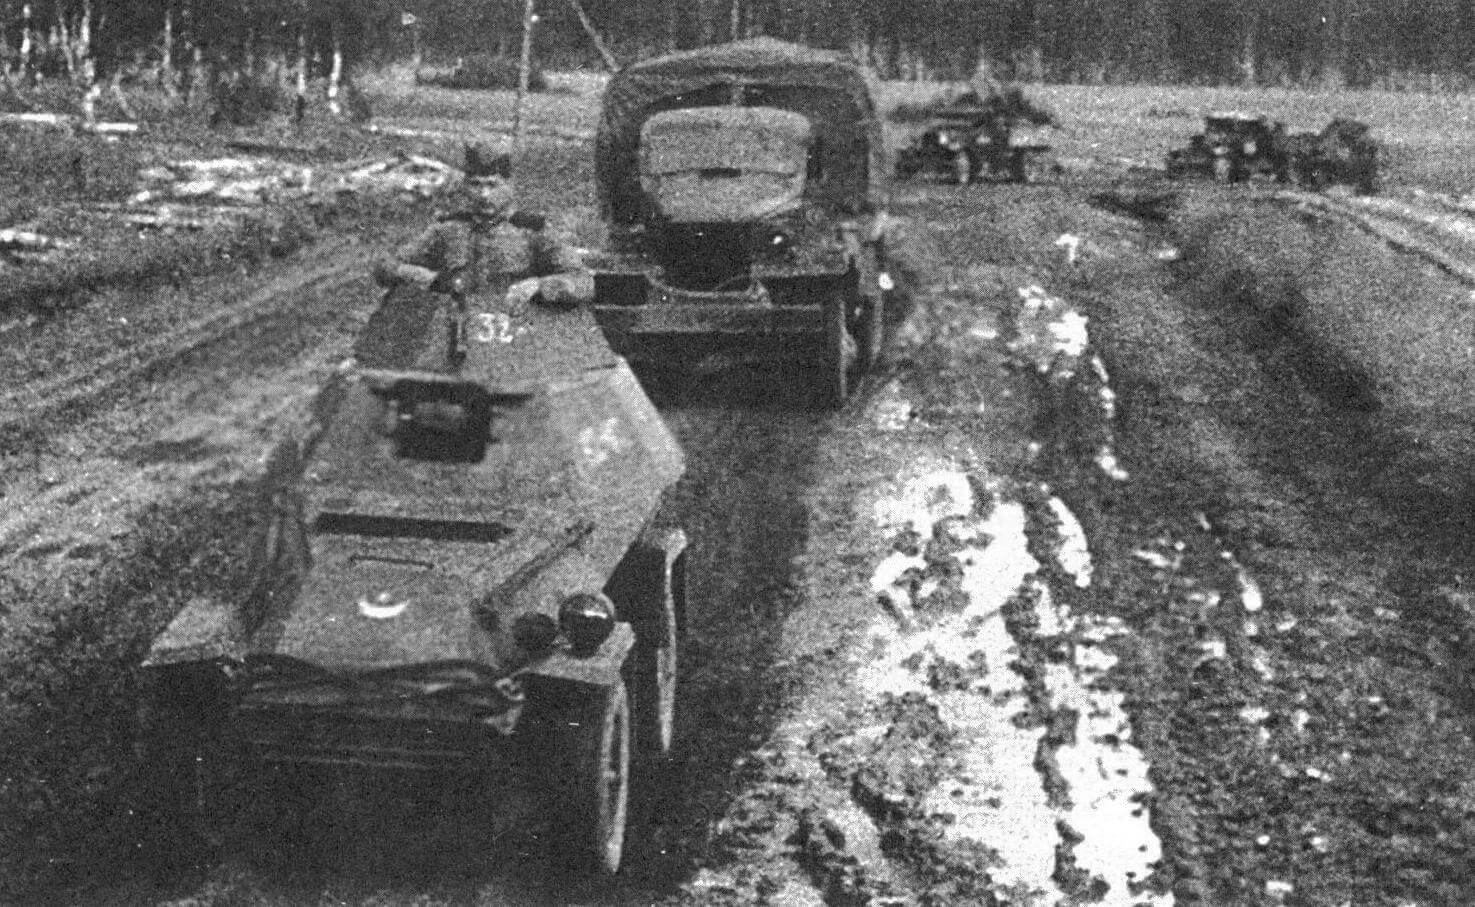 Бронеавтомобиль БА-64 в охранении транспортной колонны. Западный фронт, 1943 год